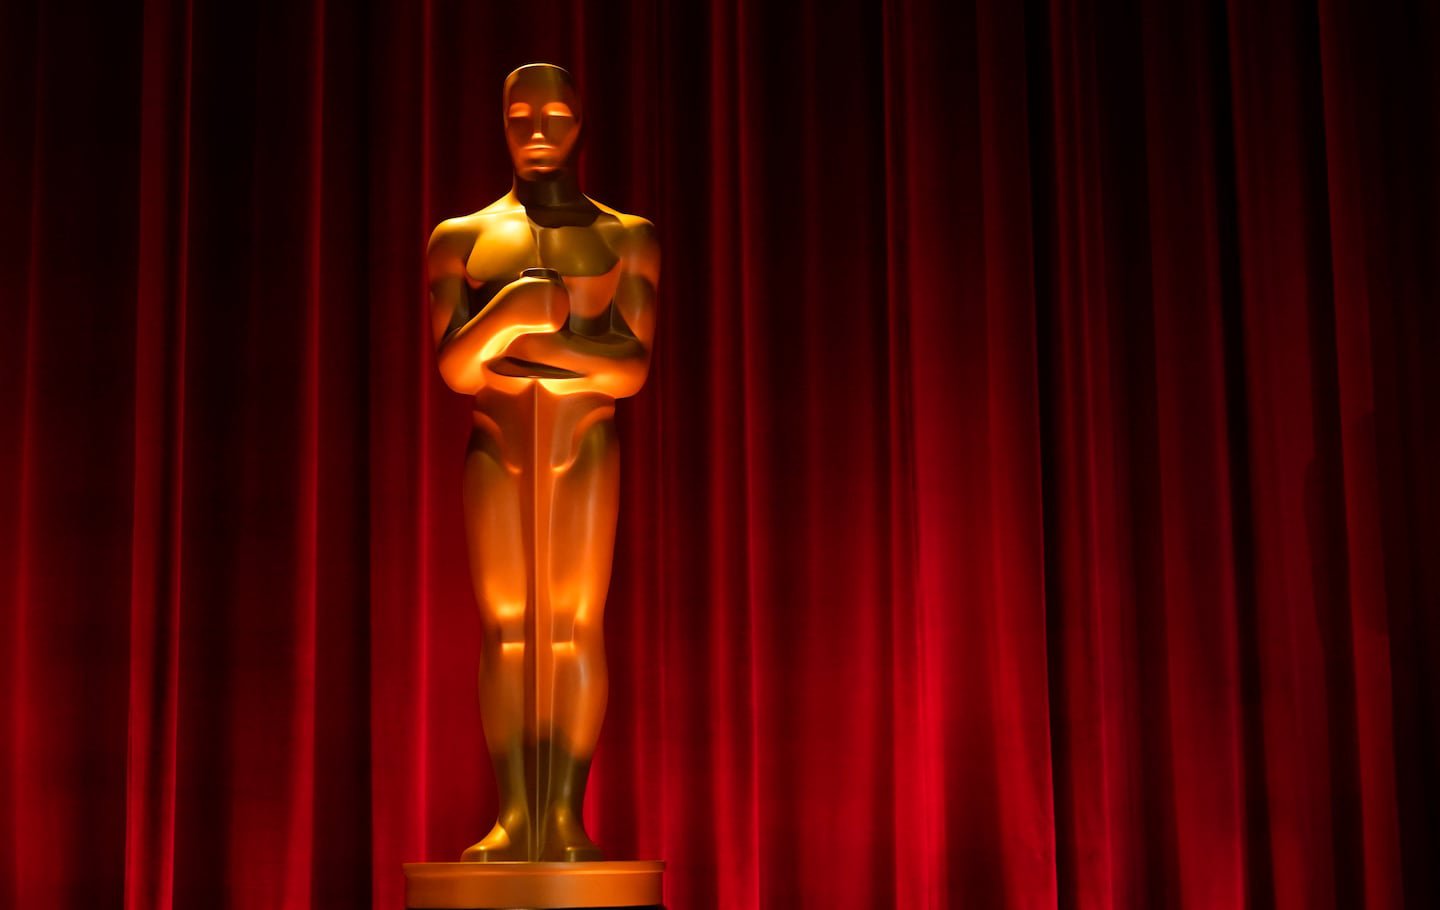 “Oscarowe wojny. Historia Hollywood pisana złotem, potem i łzami” – bo nie wszystko złoto, co się świeci